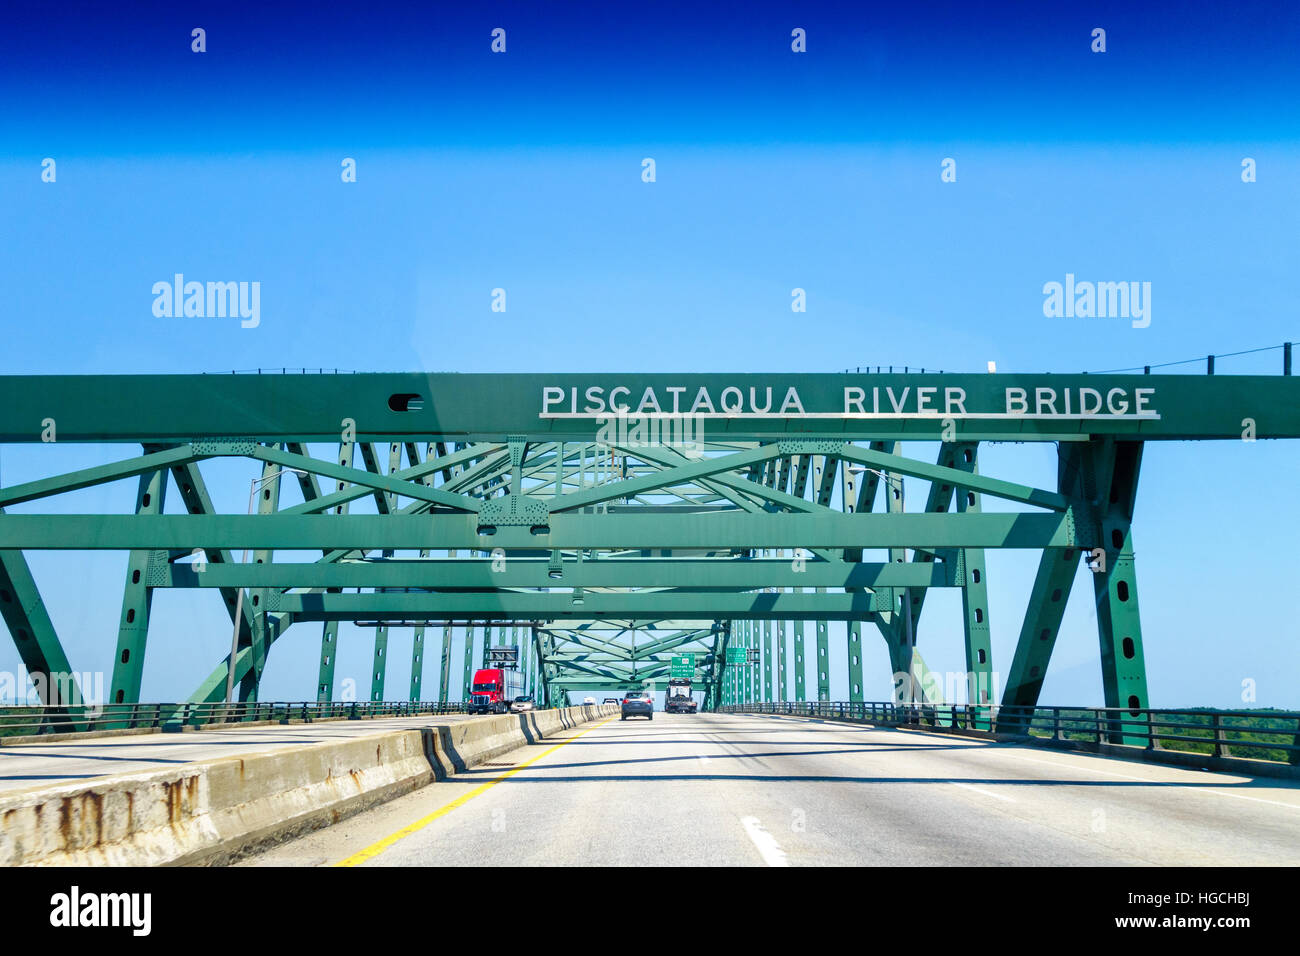 Maine Piscataqua River Bridge mit Maine State Line Zeichen in der Mitte der Brücke. Piscataqua River liegt die Grenze zwischen New Hampshire und Maine Stockfoto